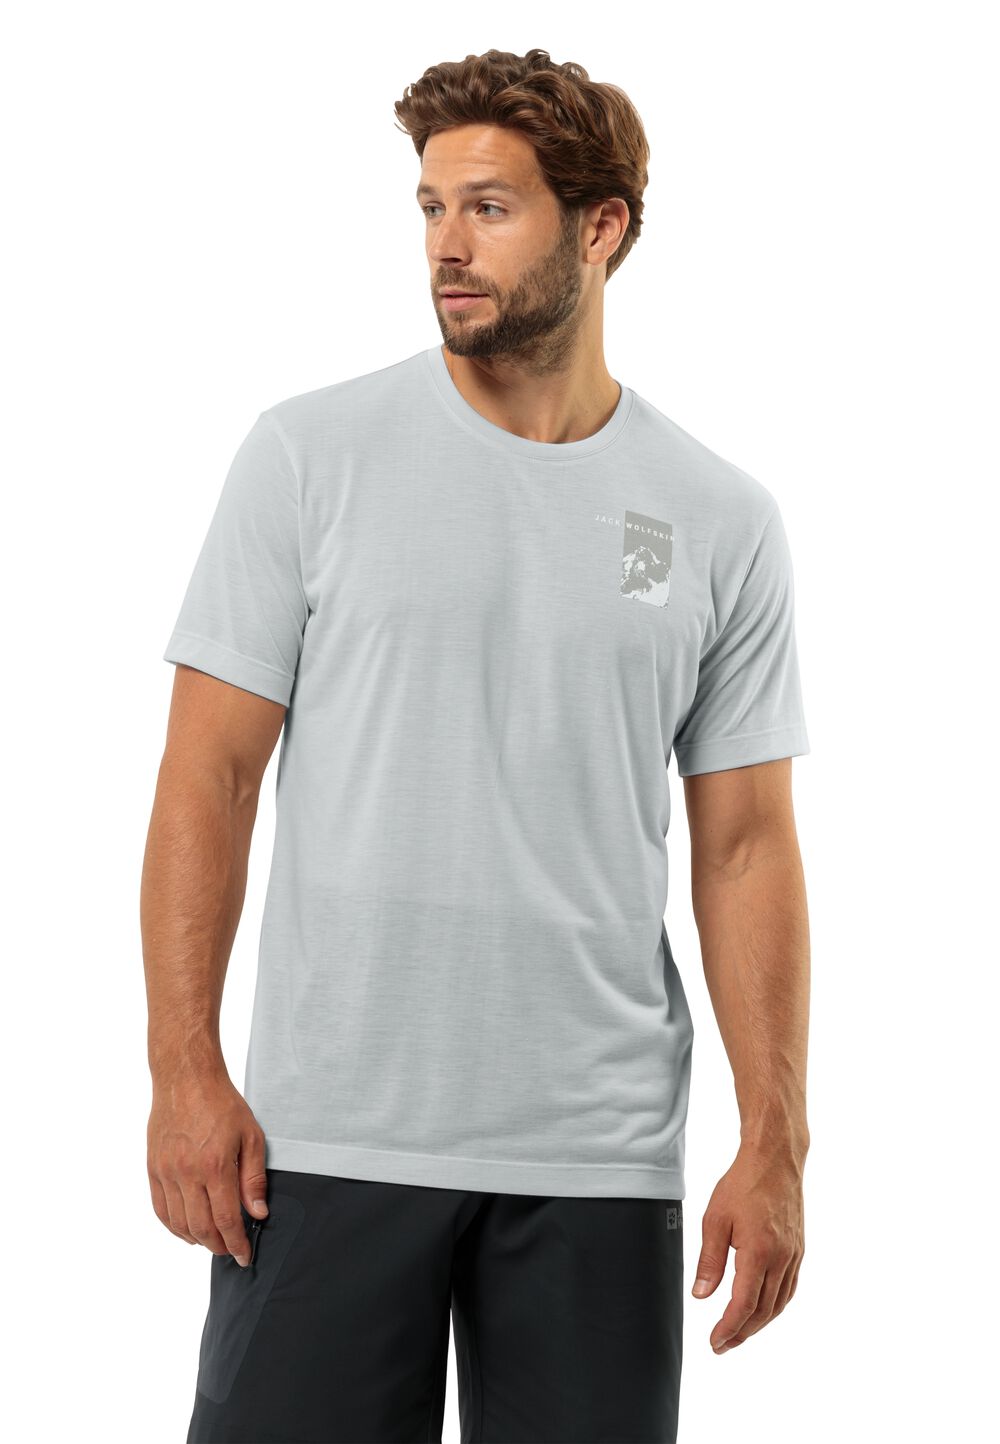 Jack Wolfskin Funktionsshirt Herren Vonnan S/S Graphic T-Shirt Men XL grau cool grey von Jack Wolfskin